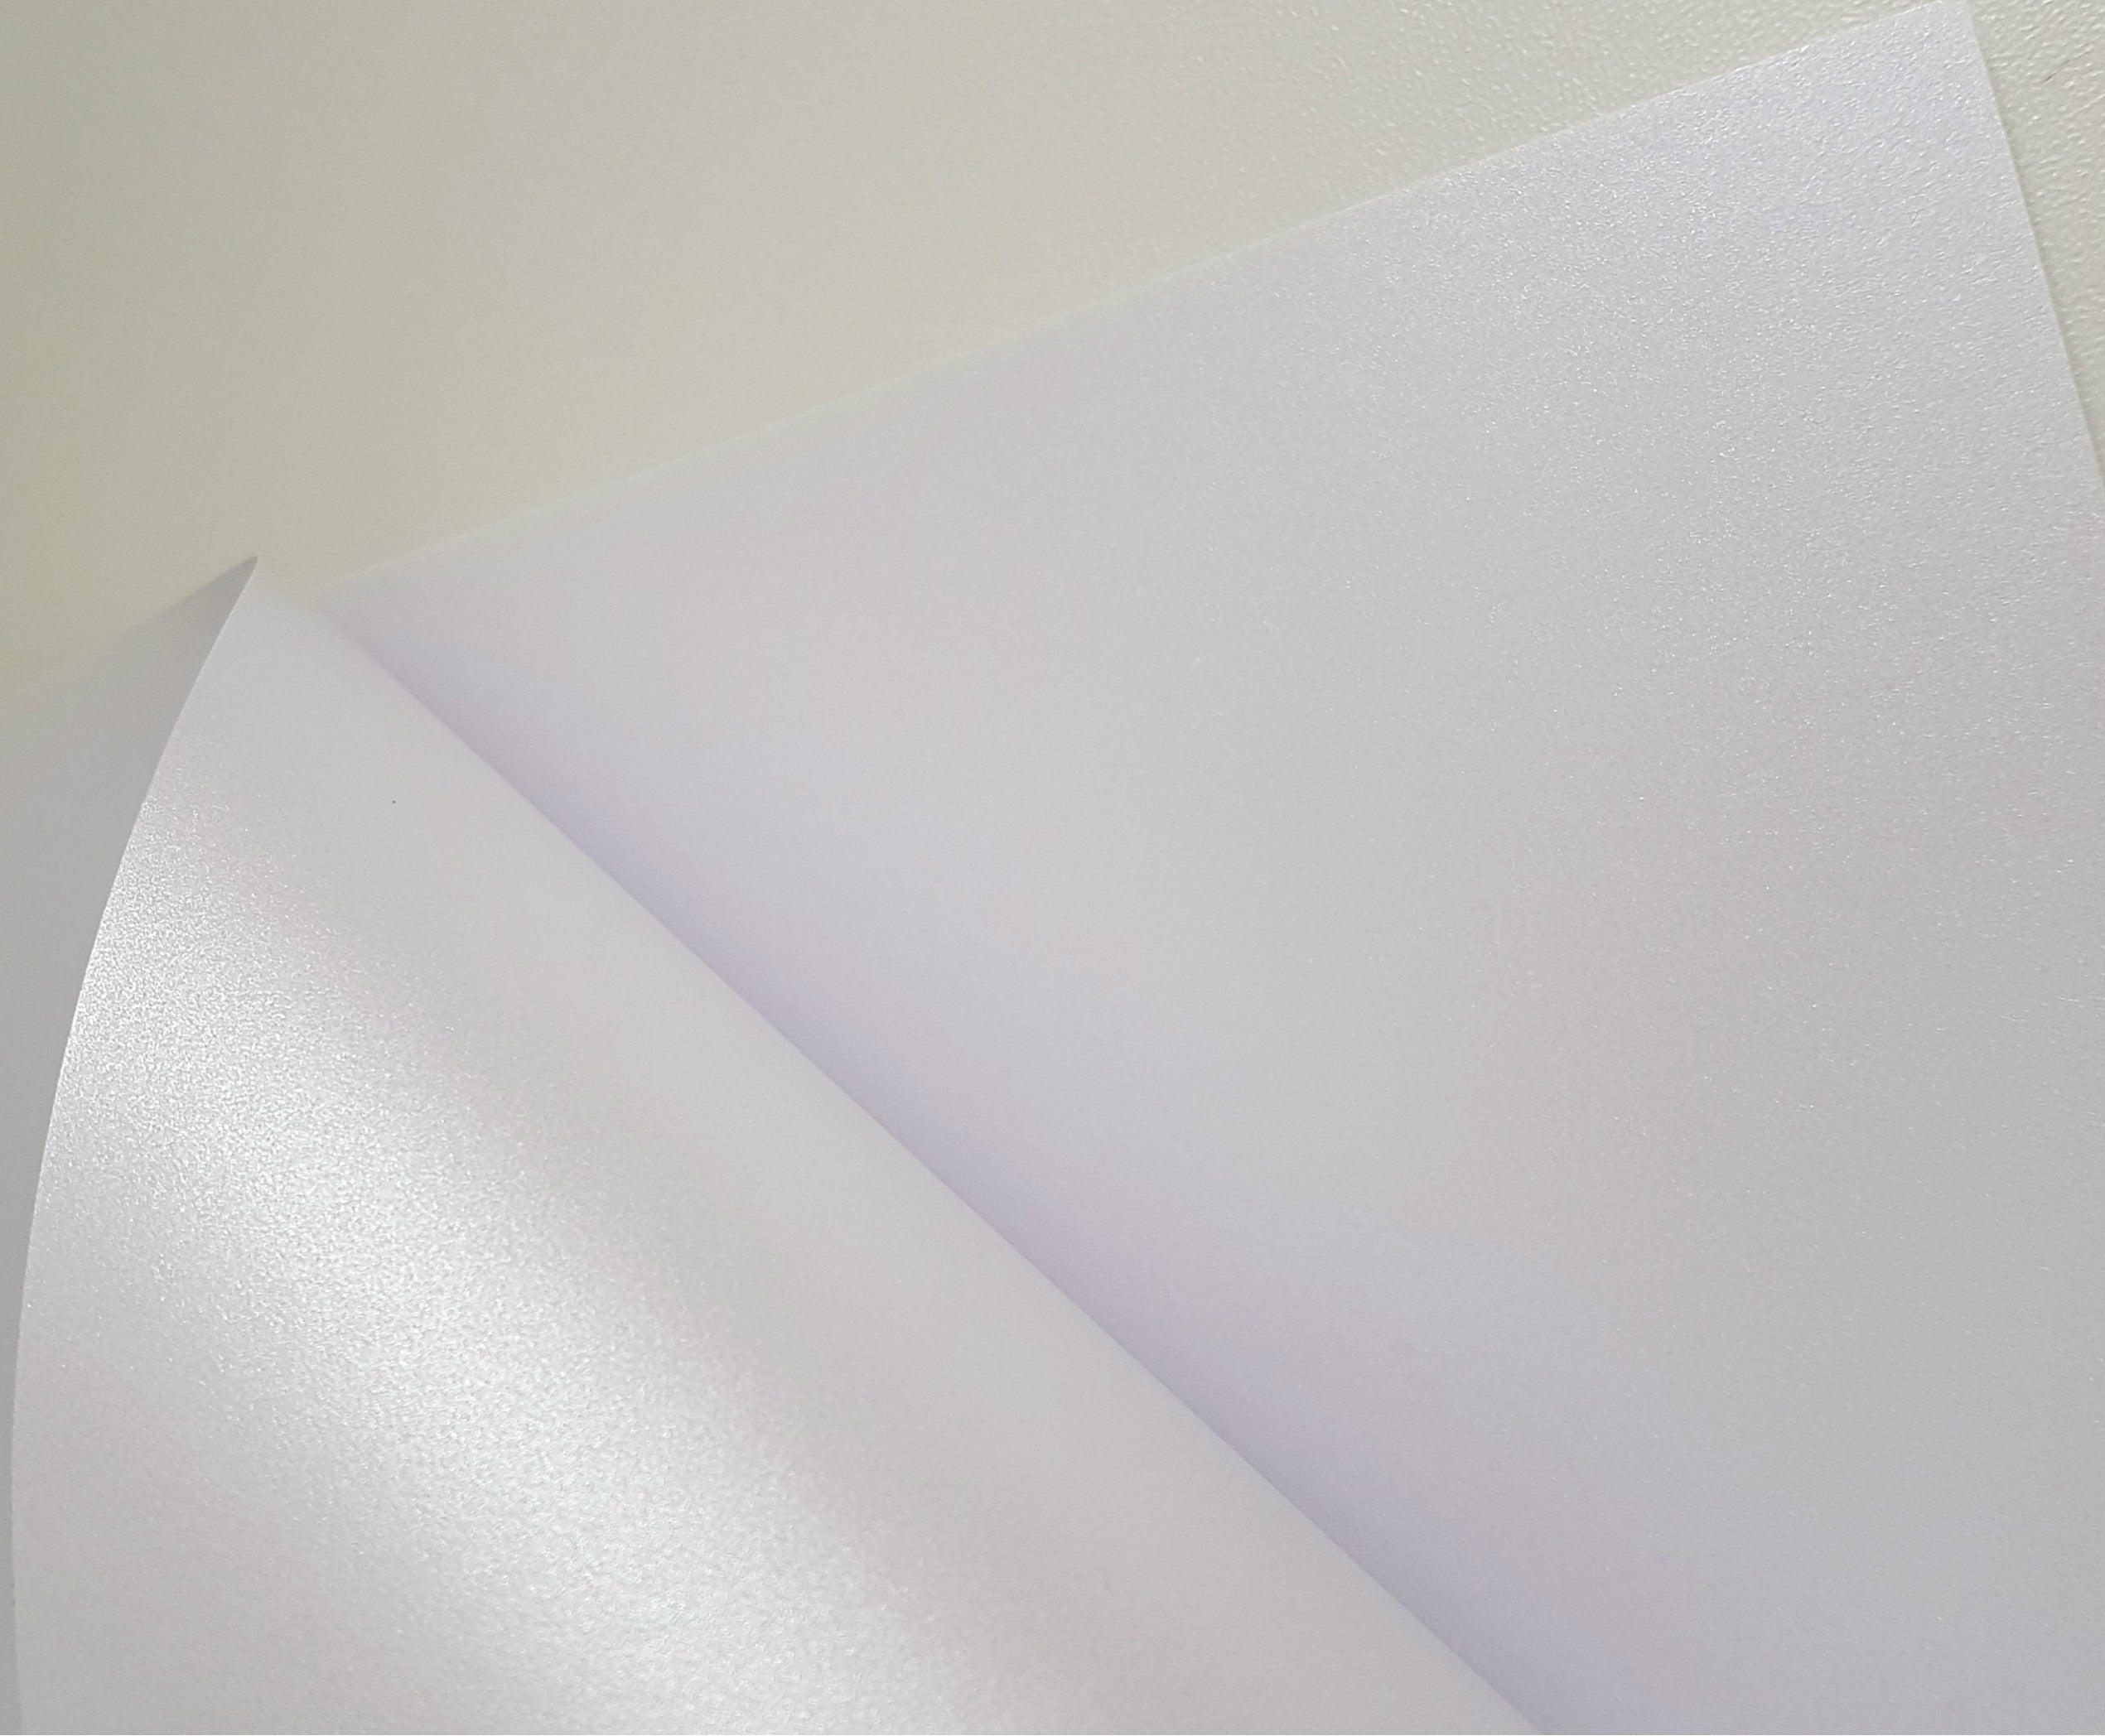 Papel Perolado Branco (Offset) 50 folhas A4 - 180g - Papel Especial